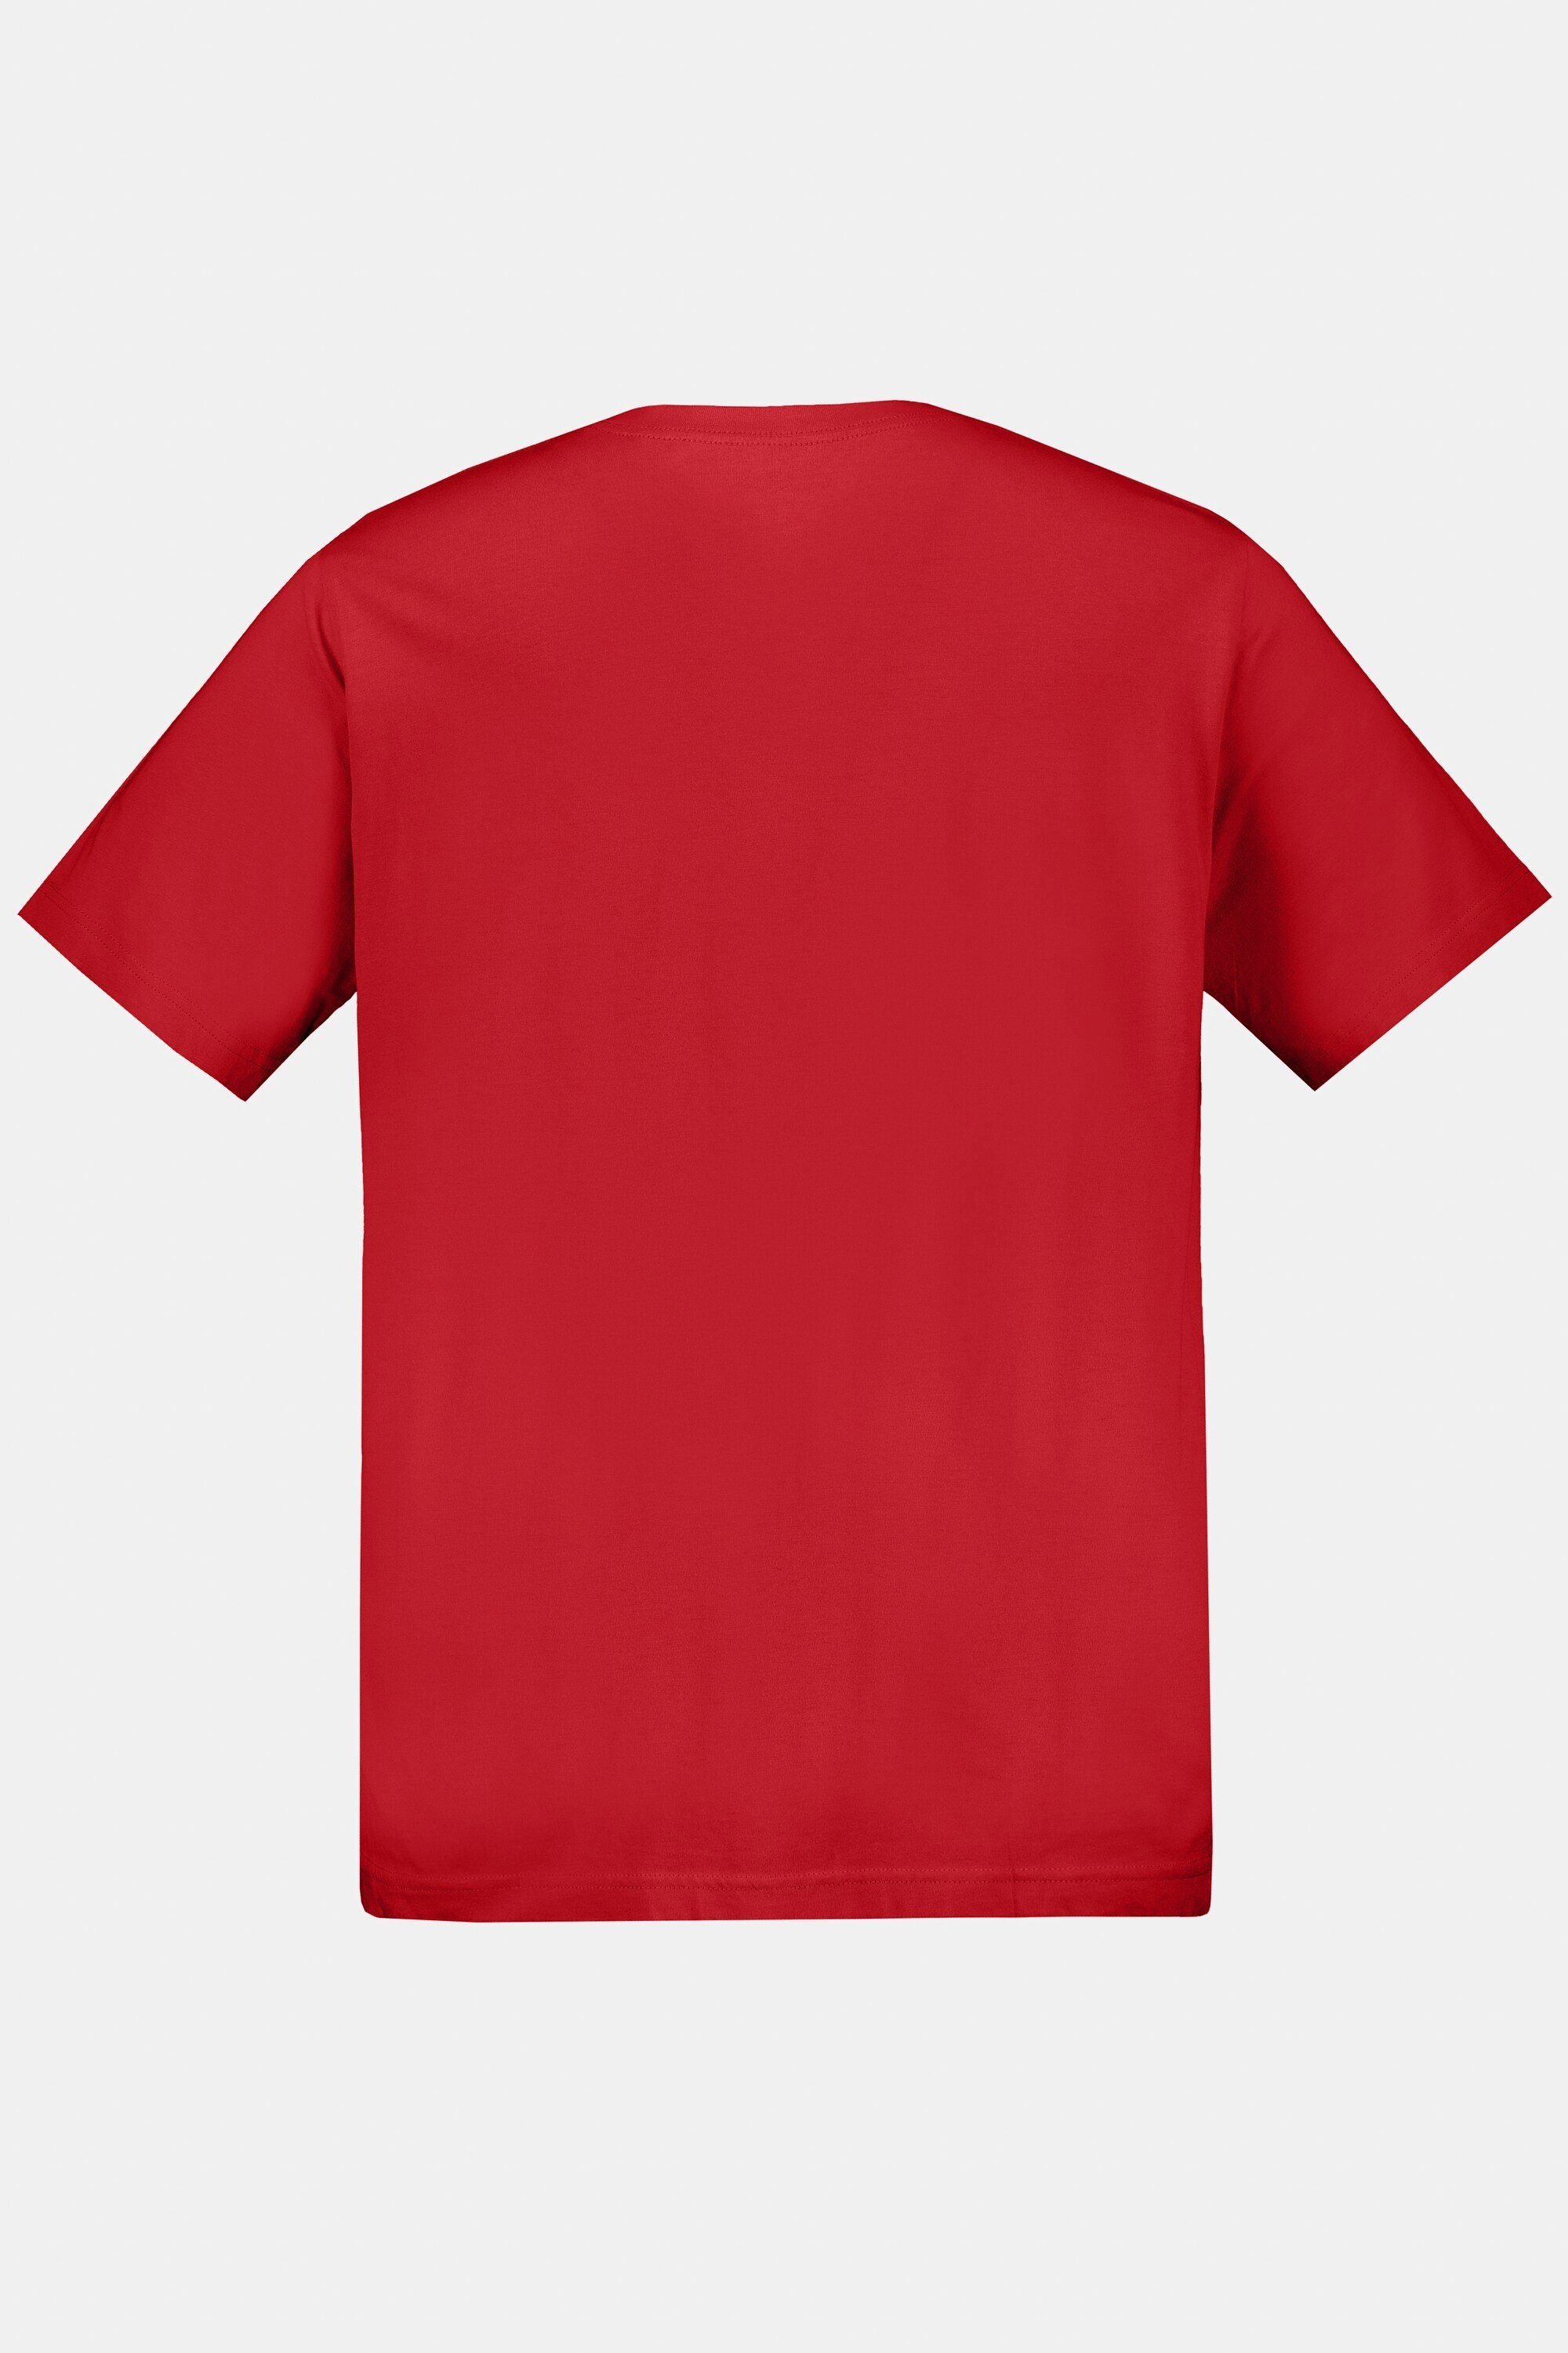 gekämmte bis Basic Baumwolle Rundhals JP1880 8XL salsa T-Shirt T-Shirt